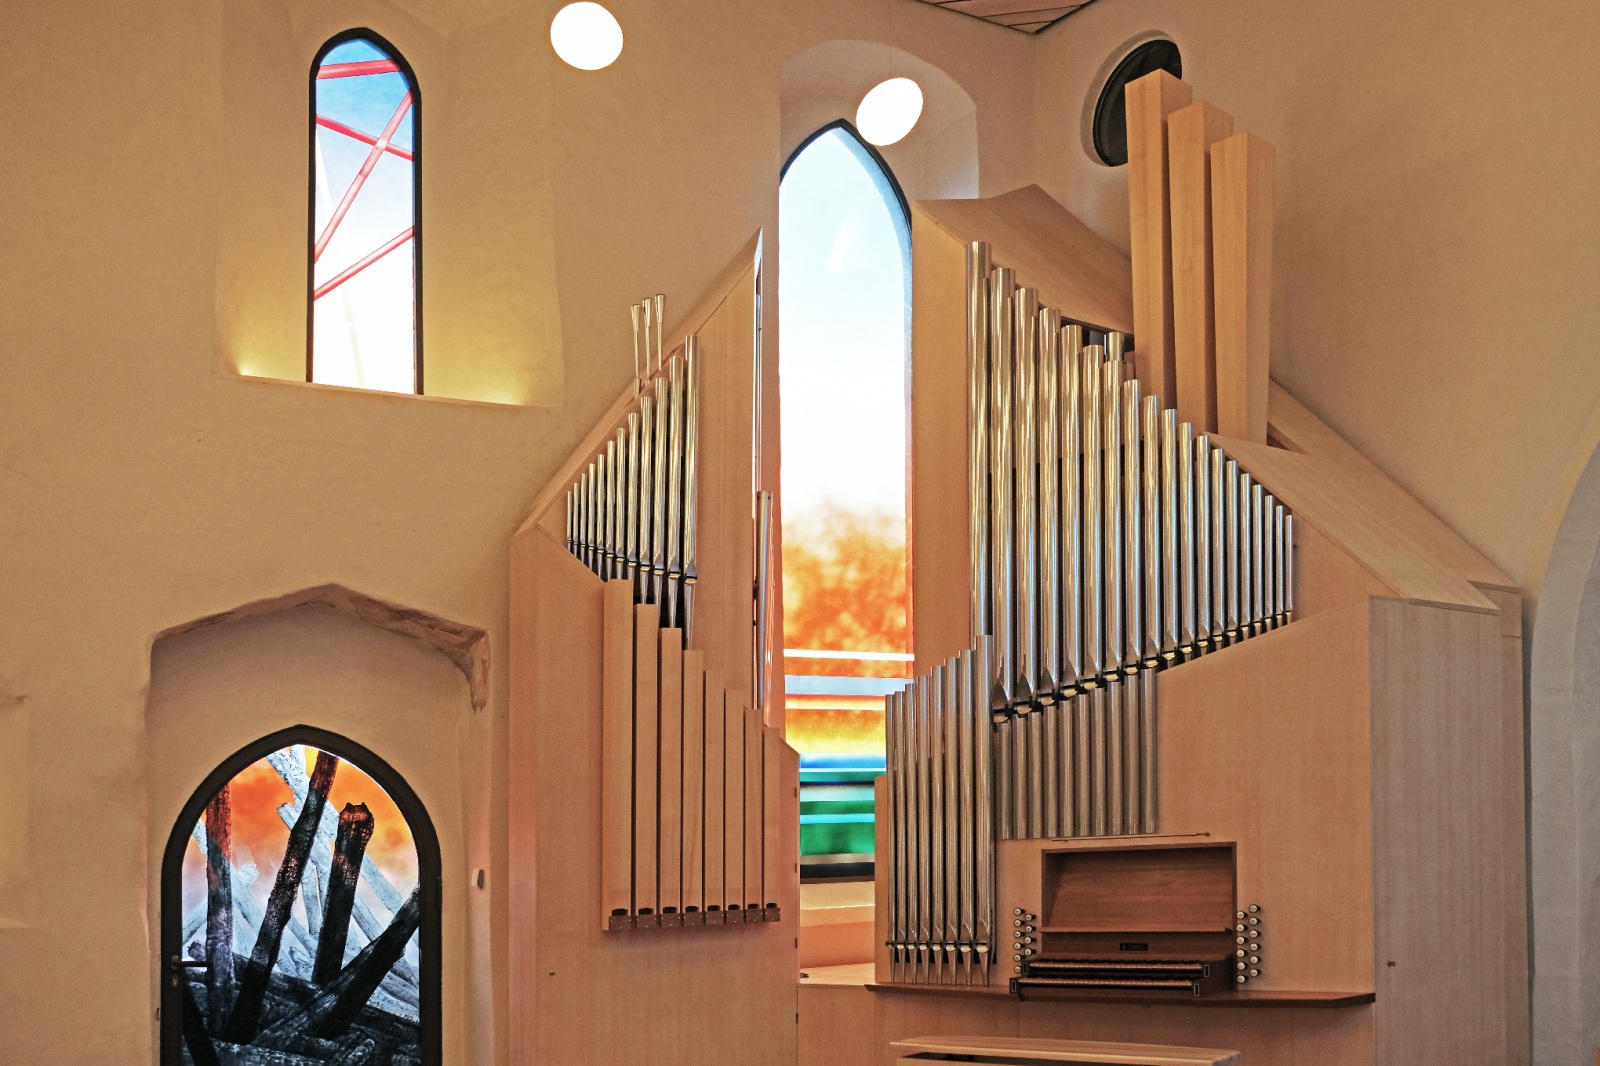 Kirchenburg Walldorf, Orgel und Glaskunst, Bild: Matthias Schmidt